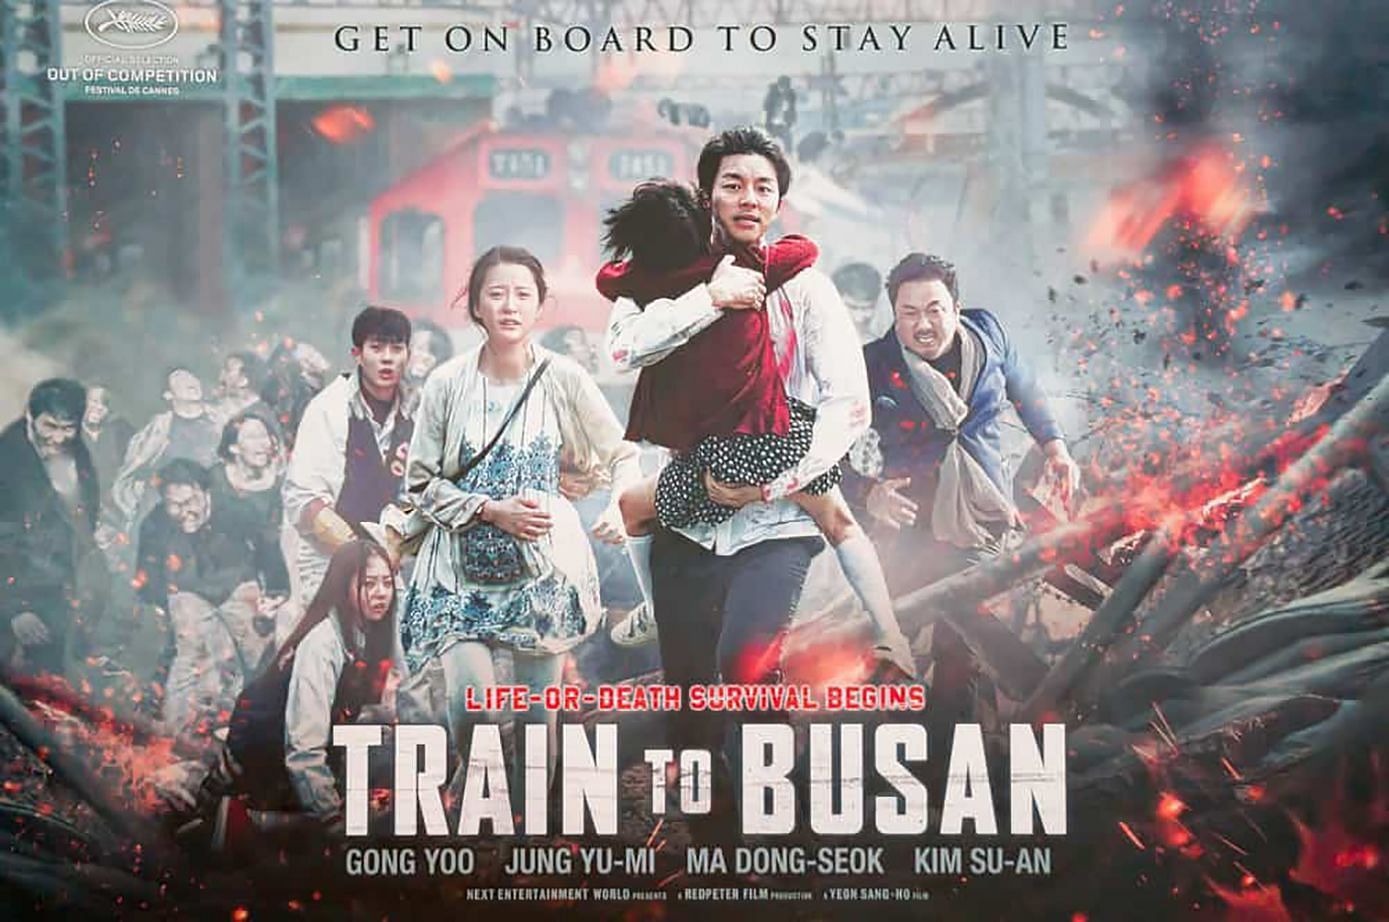 Train to Busan (Image via Next Entertainment World)